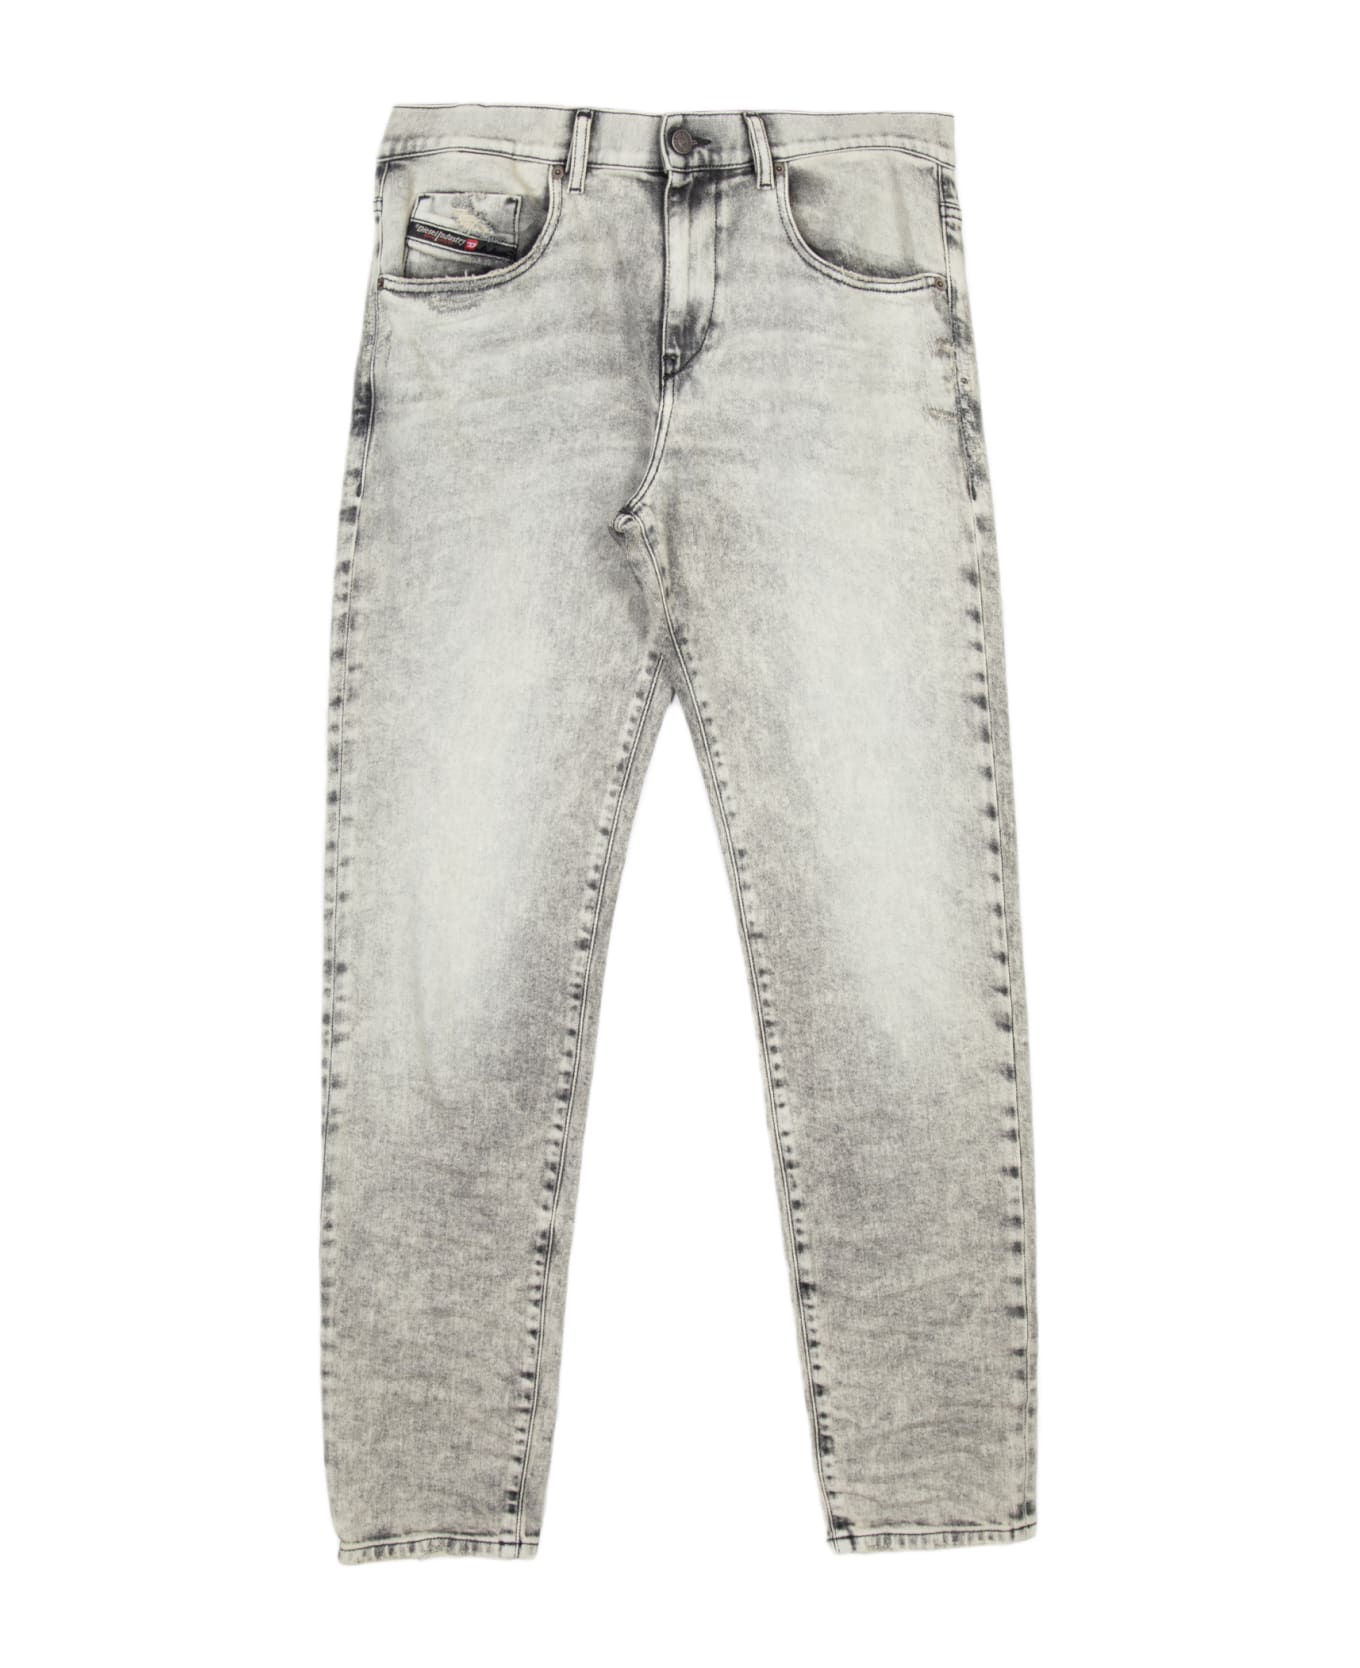 Diesel 2019 D-strukt L.30 Washed grey slim fit jeans - 2019 D-Strukt - Denim grigio